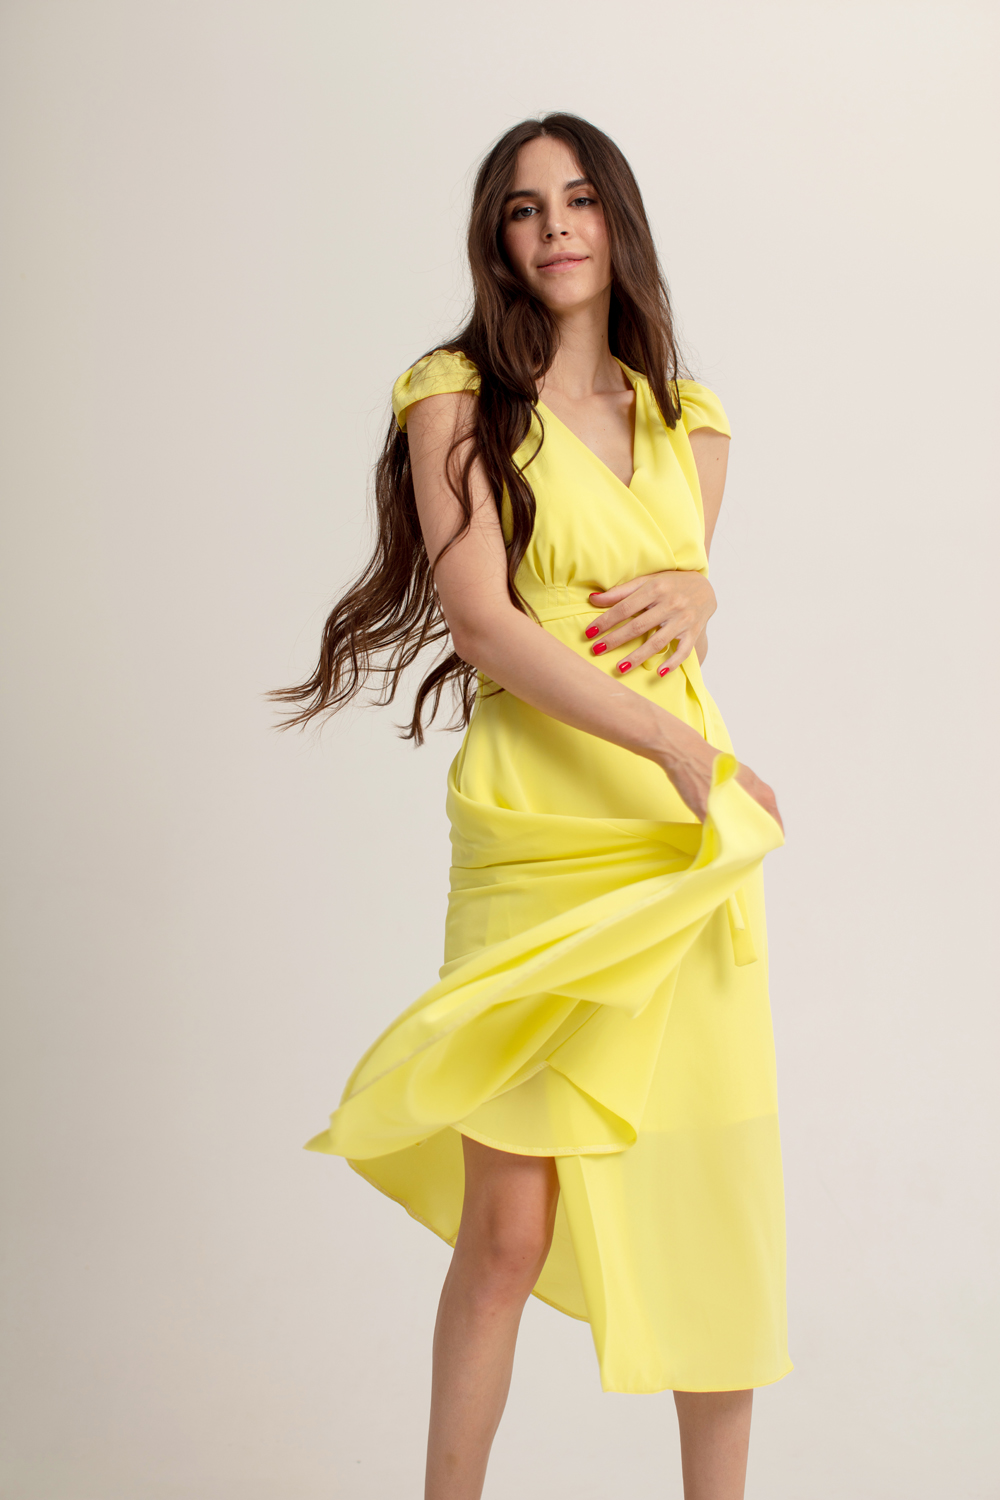 Платье лимонного цвета